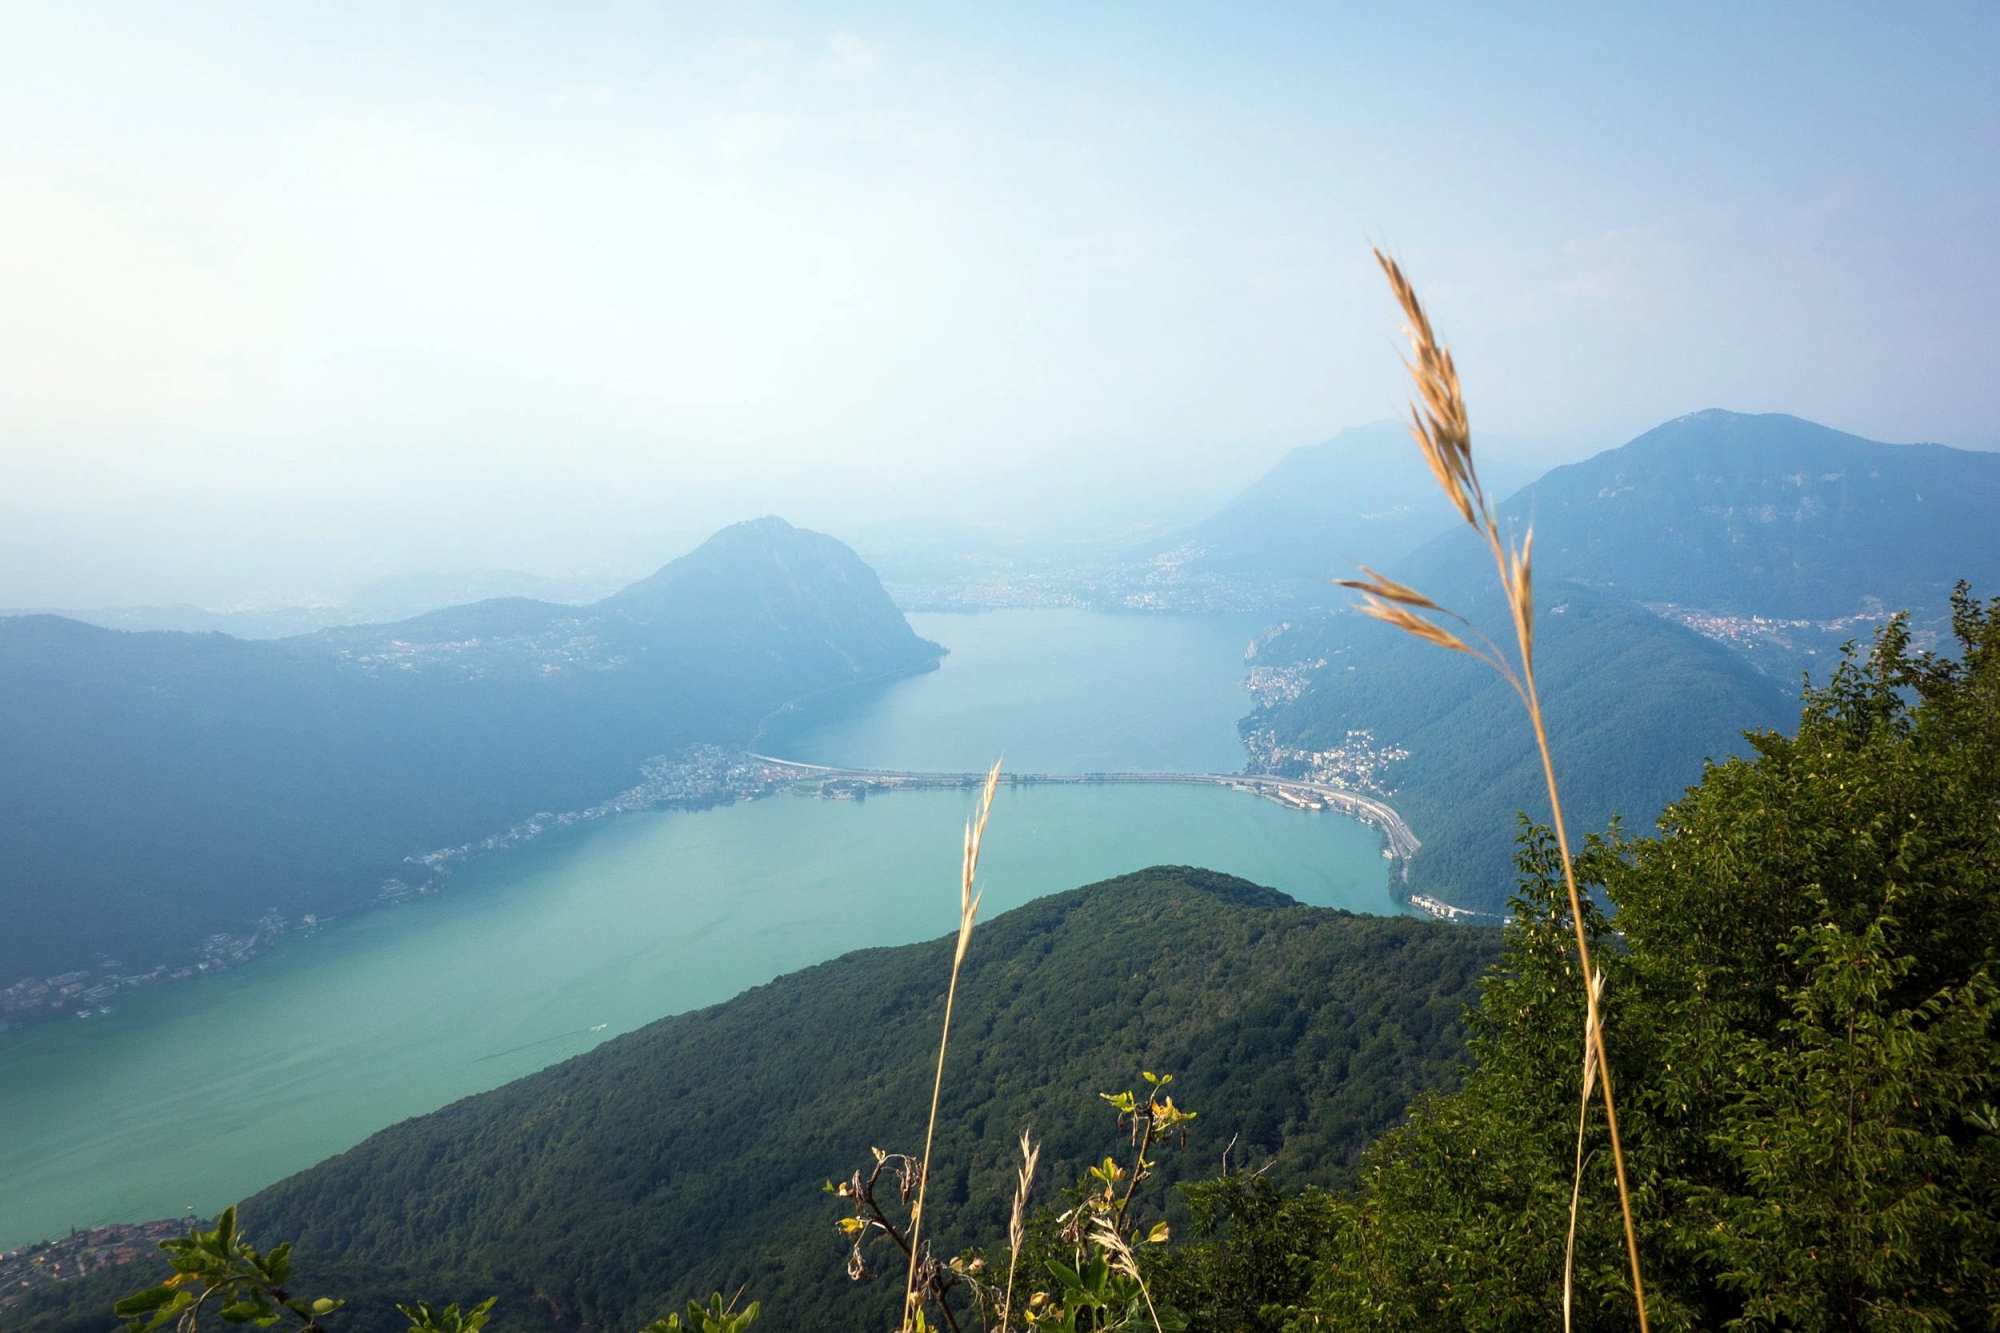 Depuis le sommet du Monte San Giorgio, on a une vue imprenable sur le lac de Lugano et le Monte San Salvatore, en forme de pain de sucre.